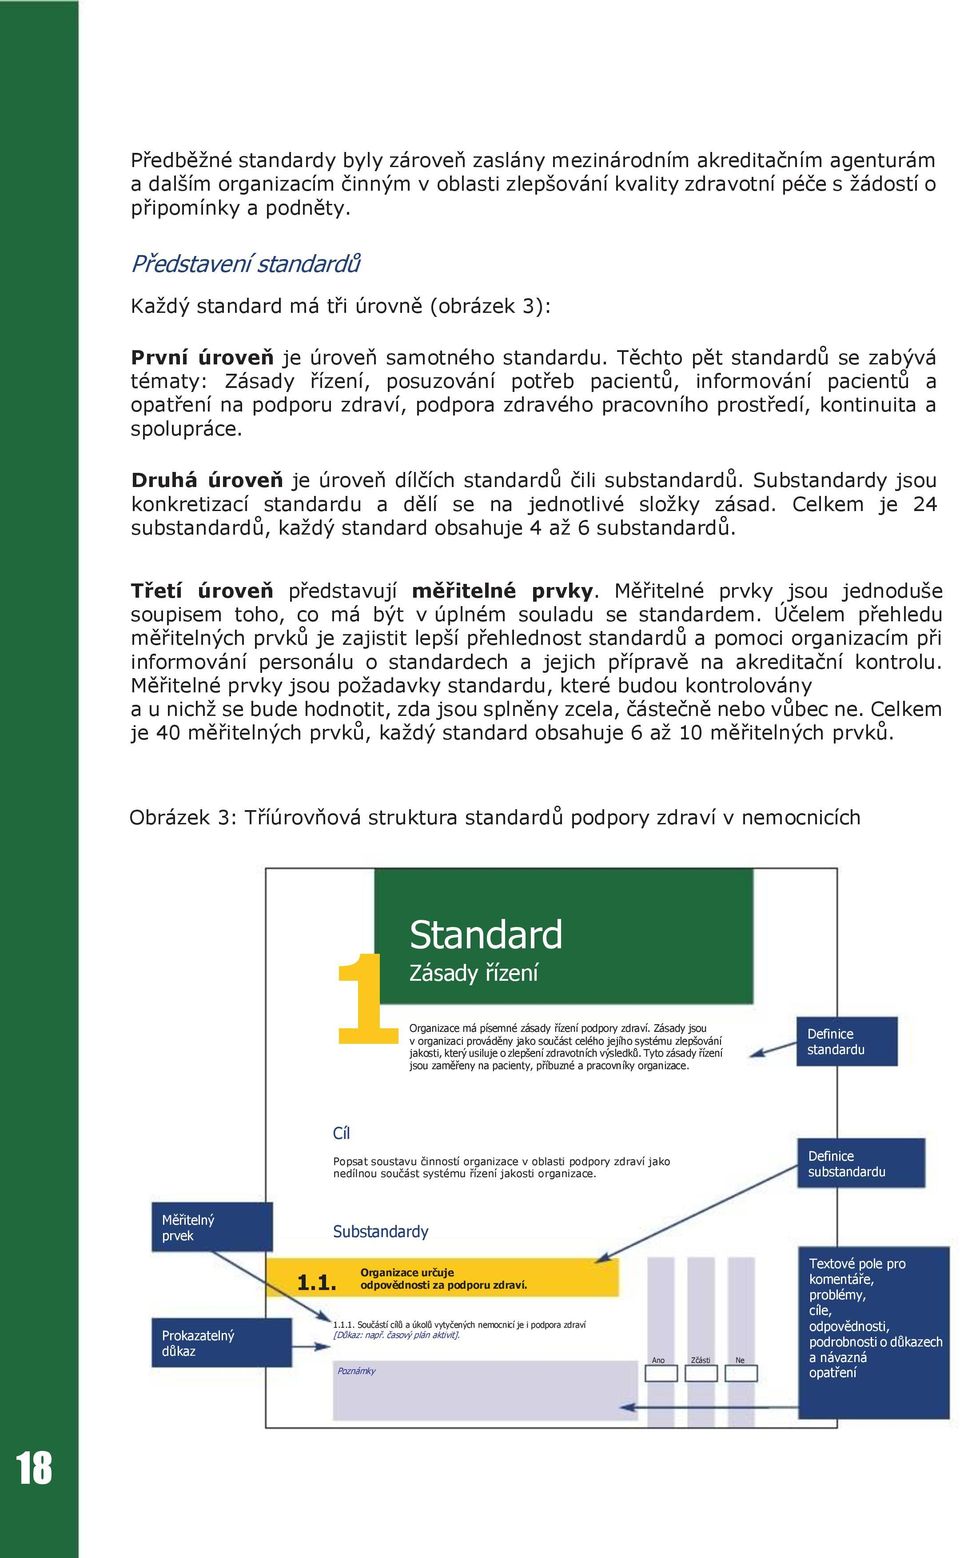 Těchto pět standardů se zabývá tématy: Zásady řízení, posuzování potřeb pacientů, informování pacientů a opatření na podporu zdraví, podpora zdravého pracovního prostředí, kontinuita a spolupráce.